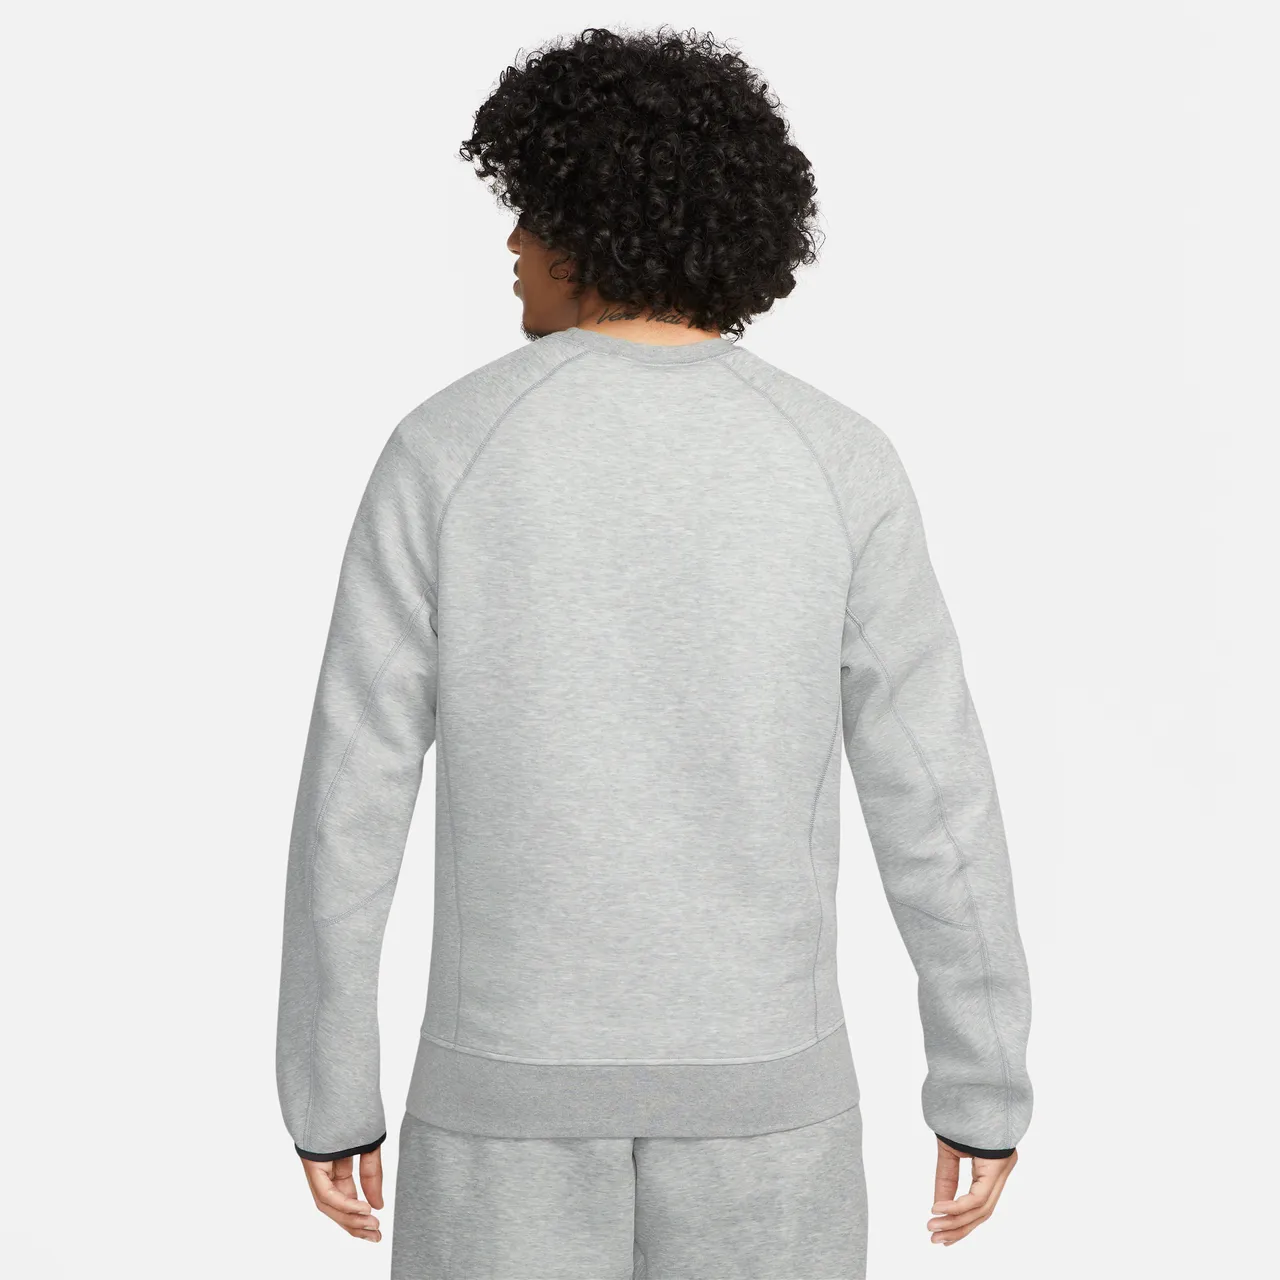 Nike Sportswear Tech Fleece Men's Crew - Grey - Polyester